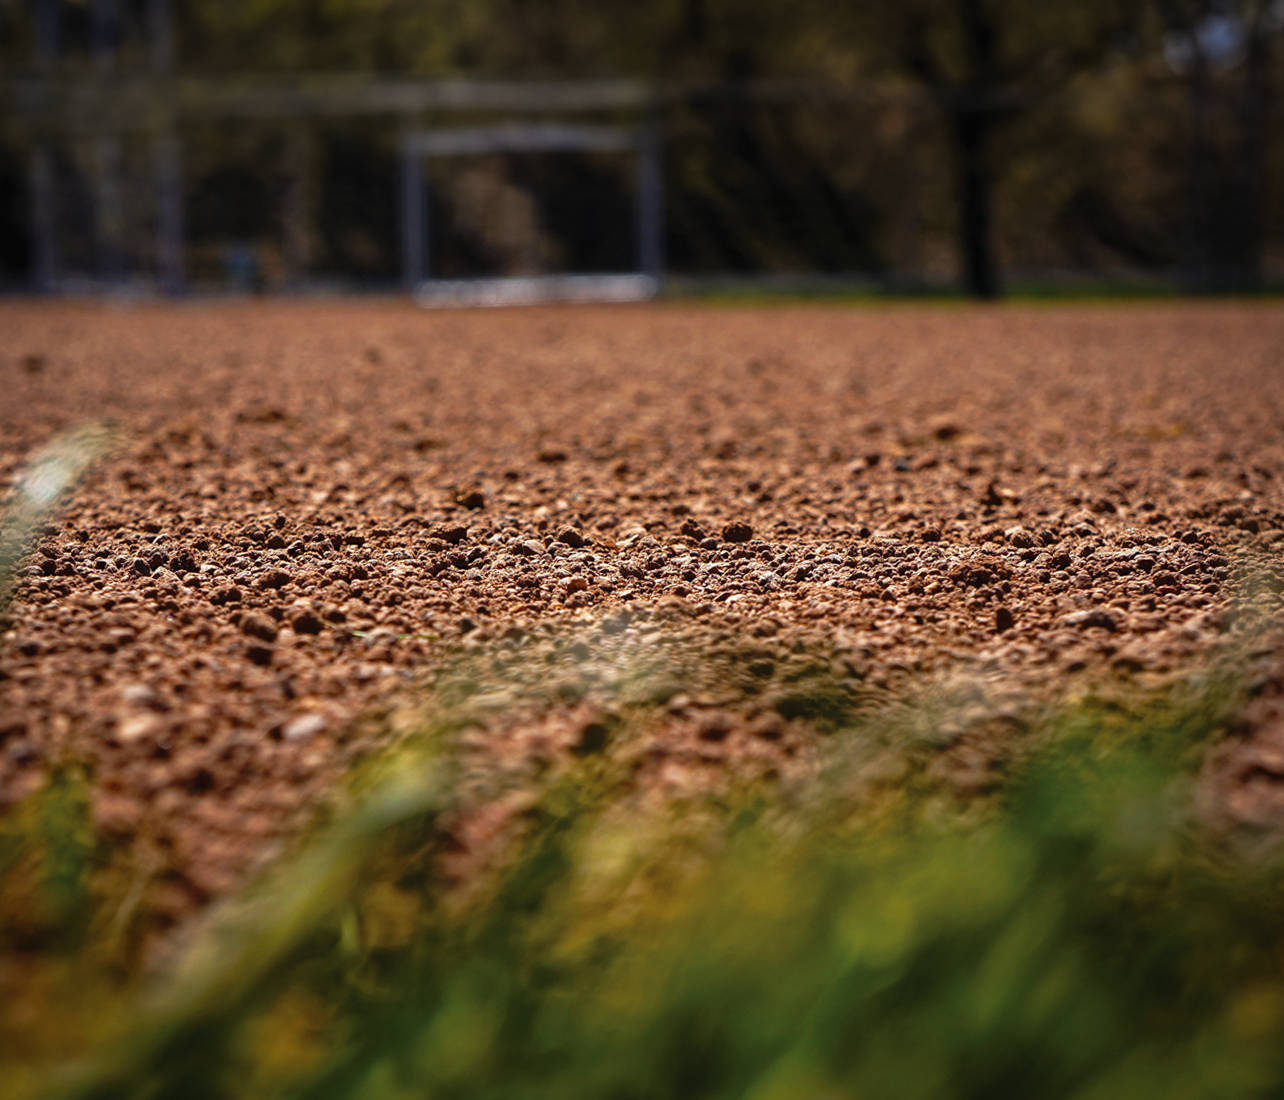 closeup of ballfield dirt